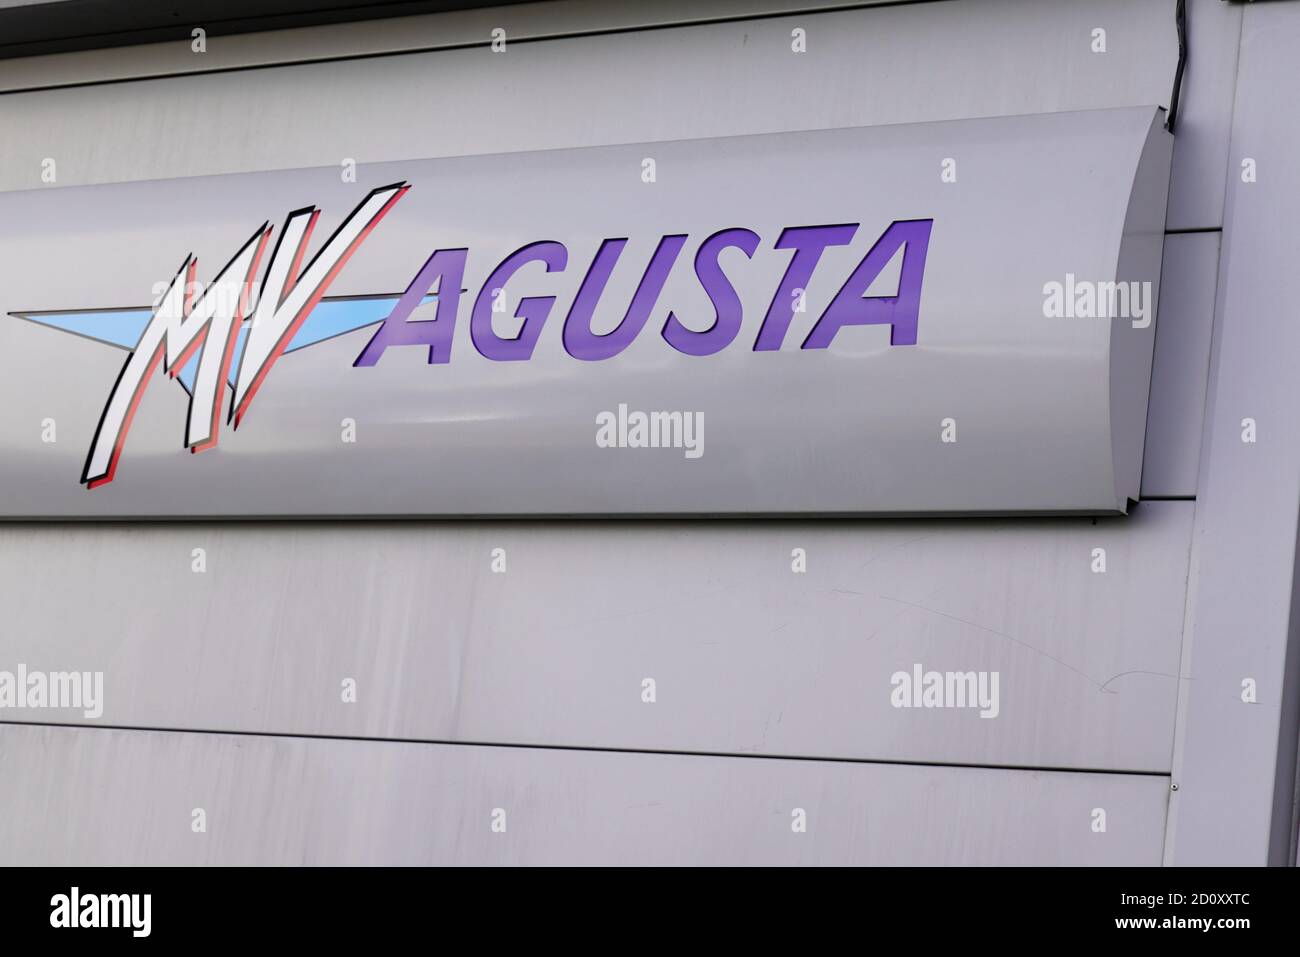 Bordeaux , Aquitaine / France - 09 25 2020 : MW Agusta texte sgn et logo moto avant de la concession moto moto Banque D'Images